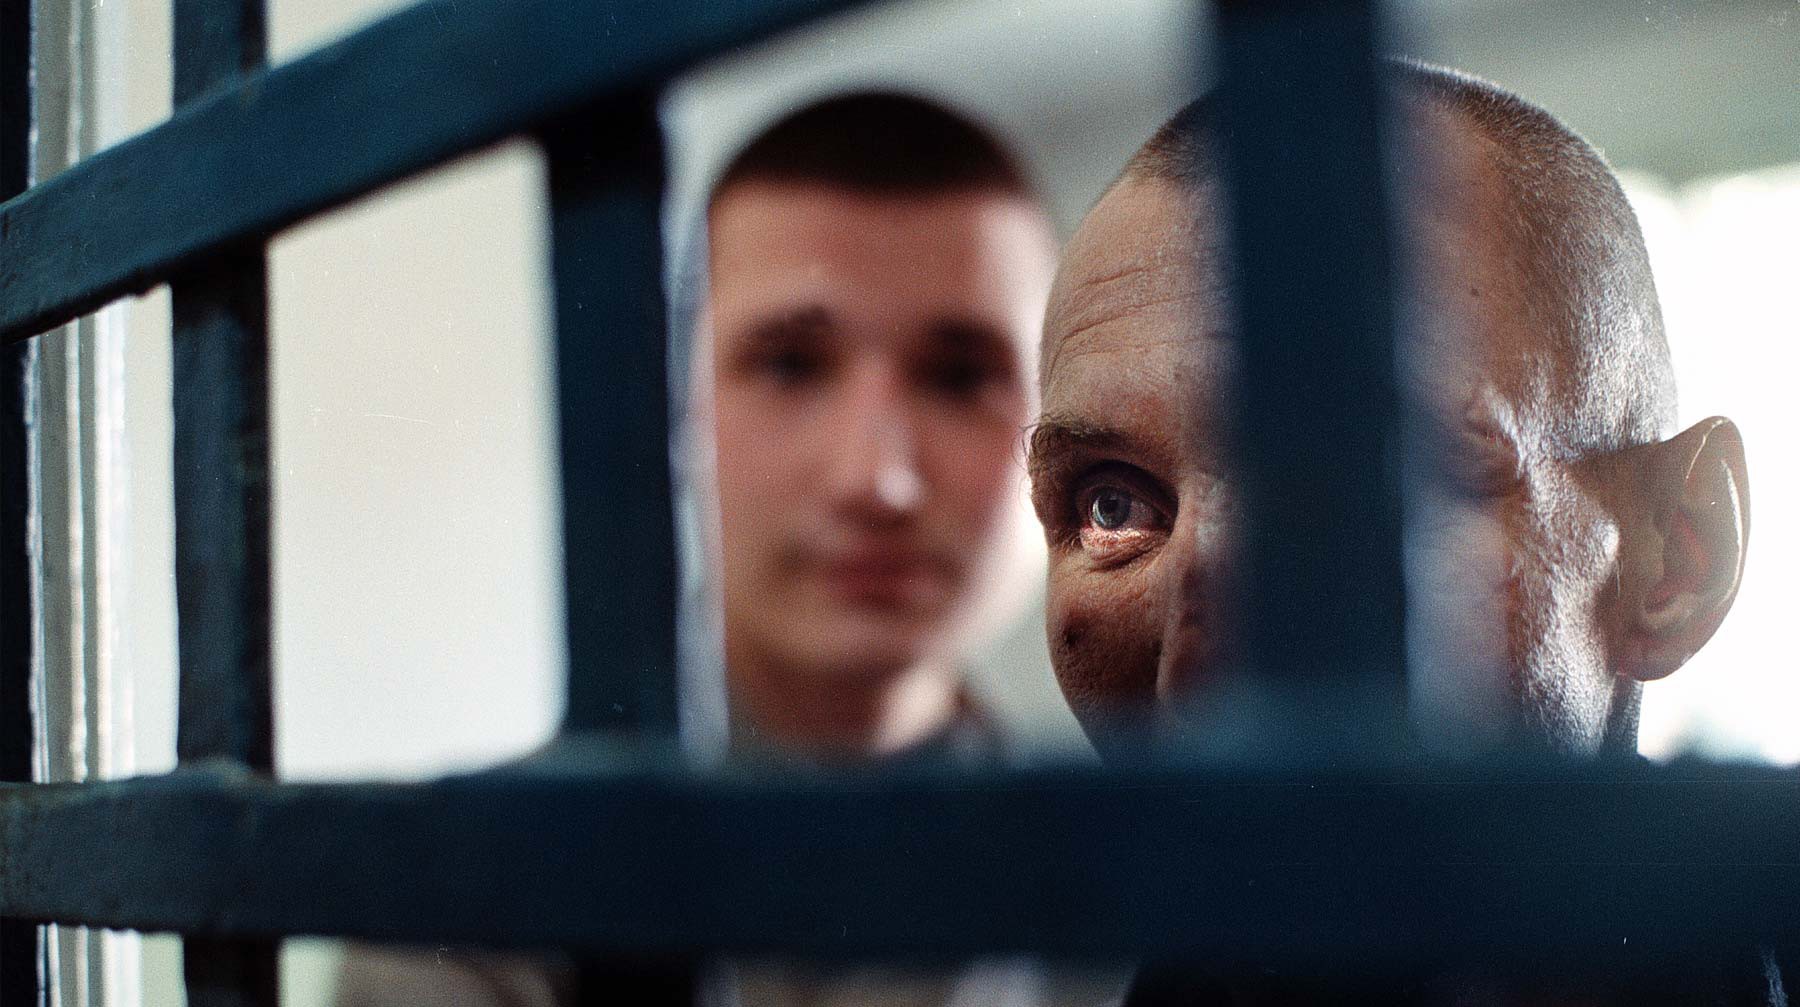 Dailystorm - В российских колониях могут усложнить правозащитникам видеосъемку заключенных